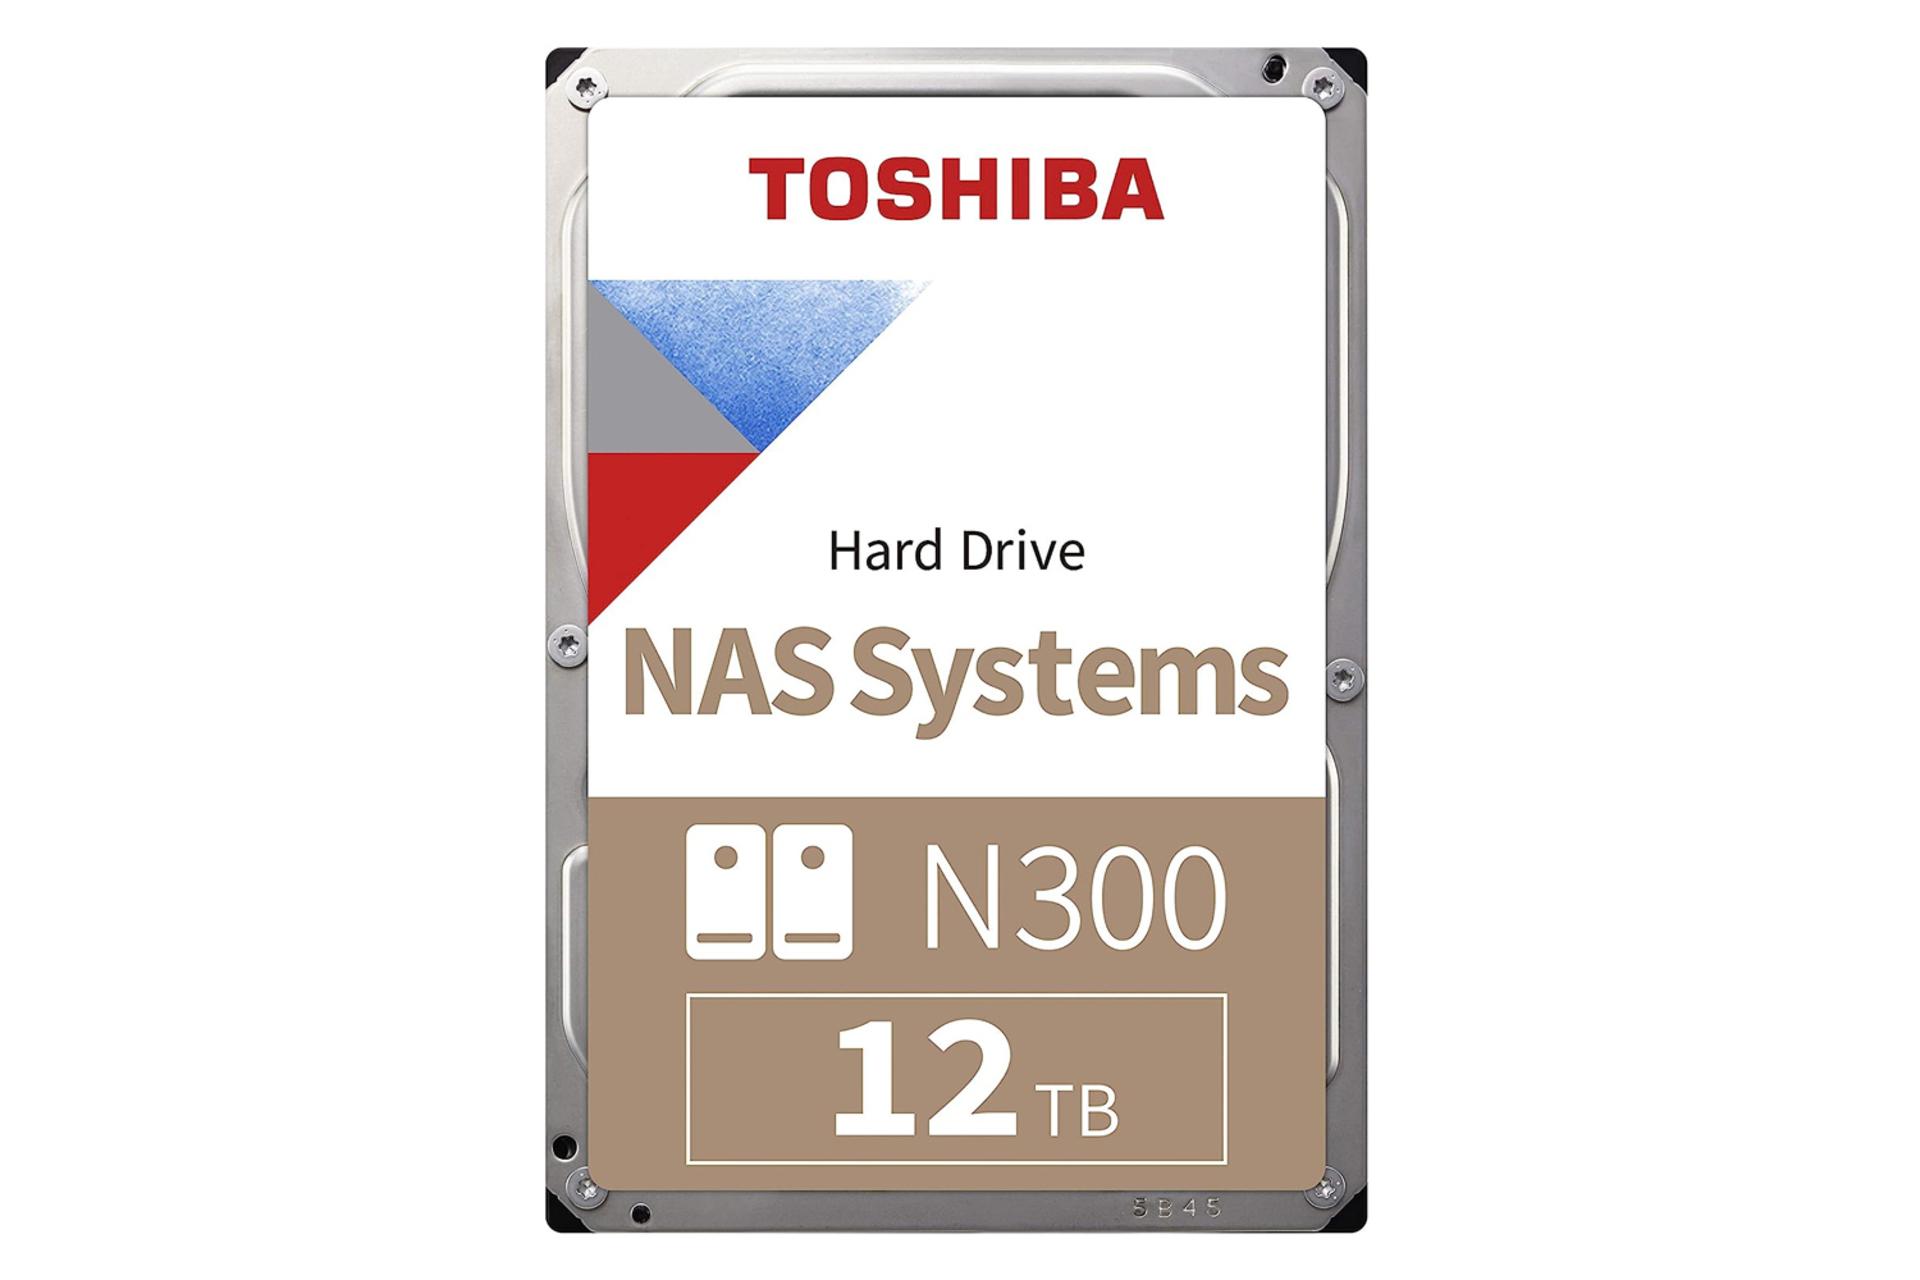 ابعاد SSD توشیبا N300 NAS SATA 3.5 Inch ظرفیت 12 ترابایت